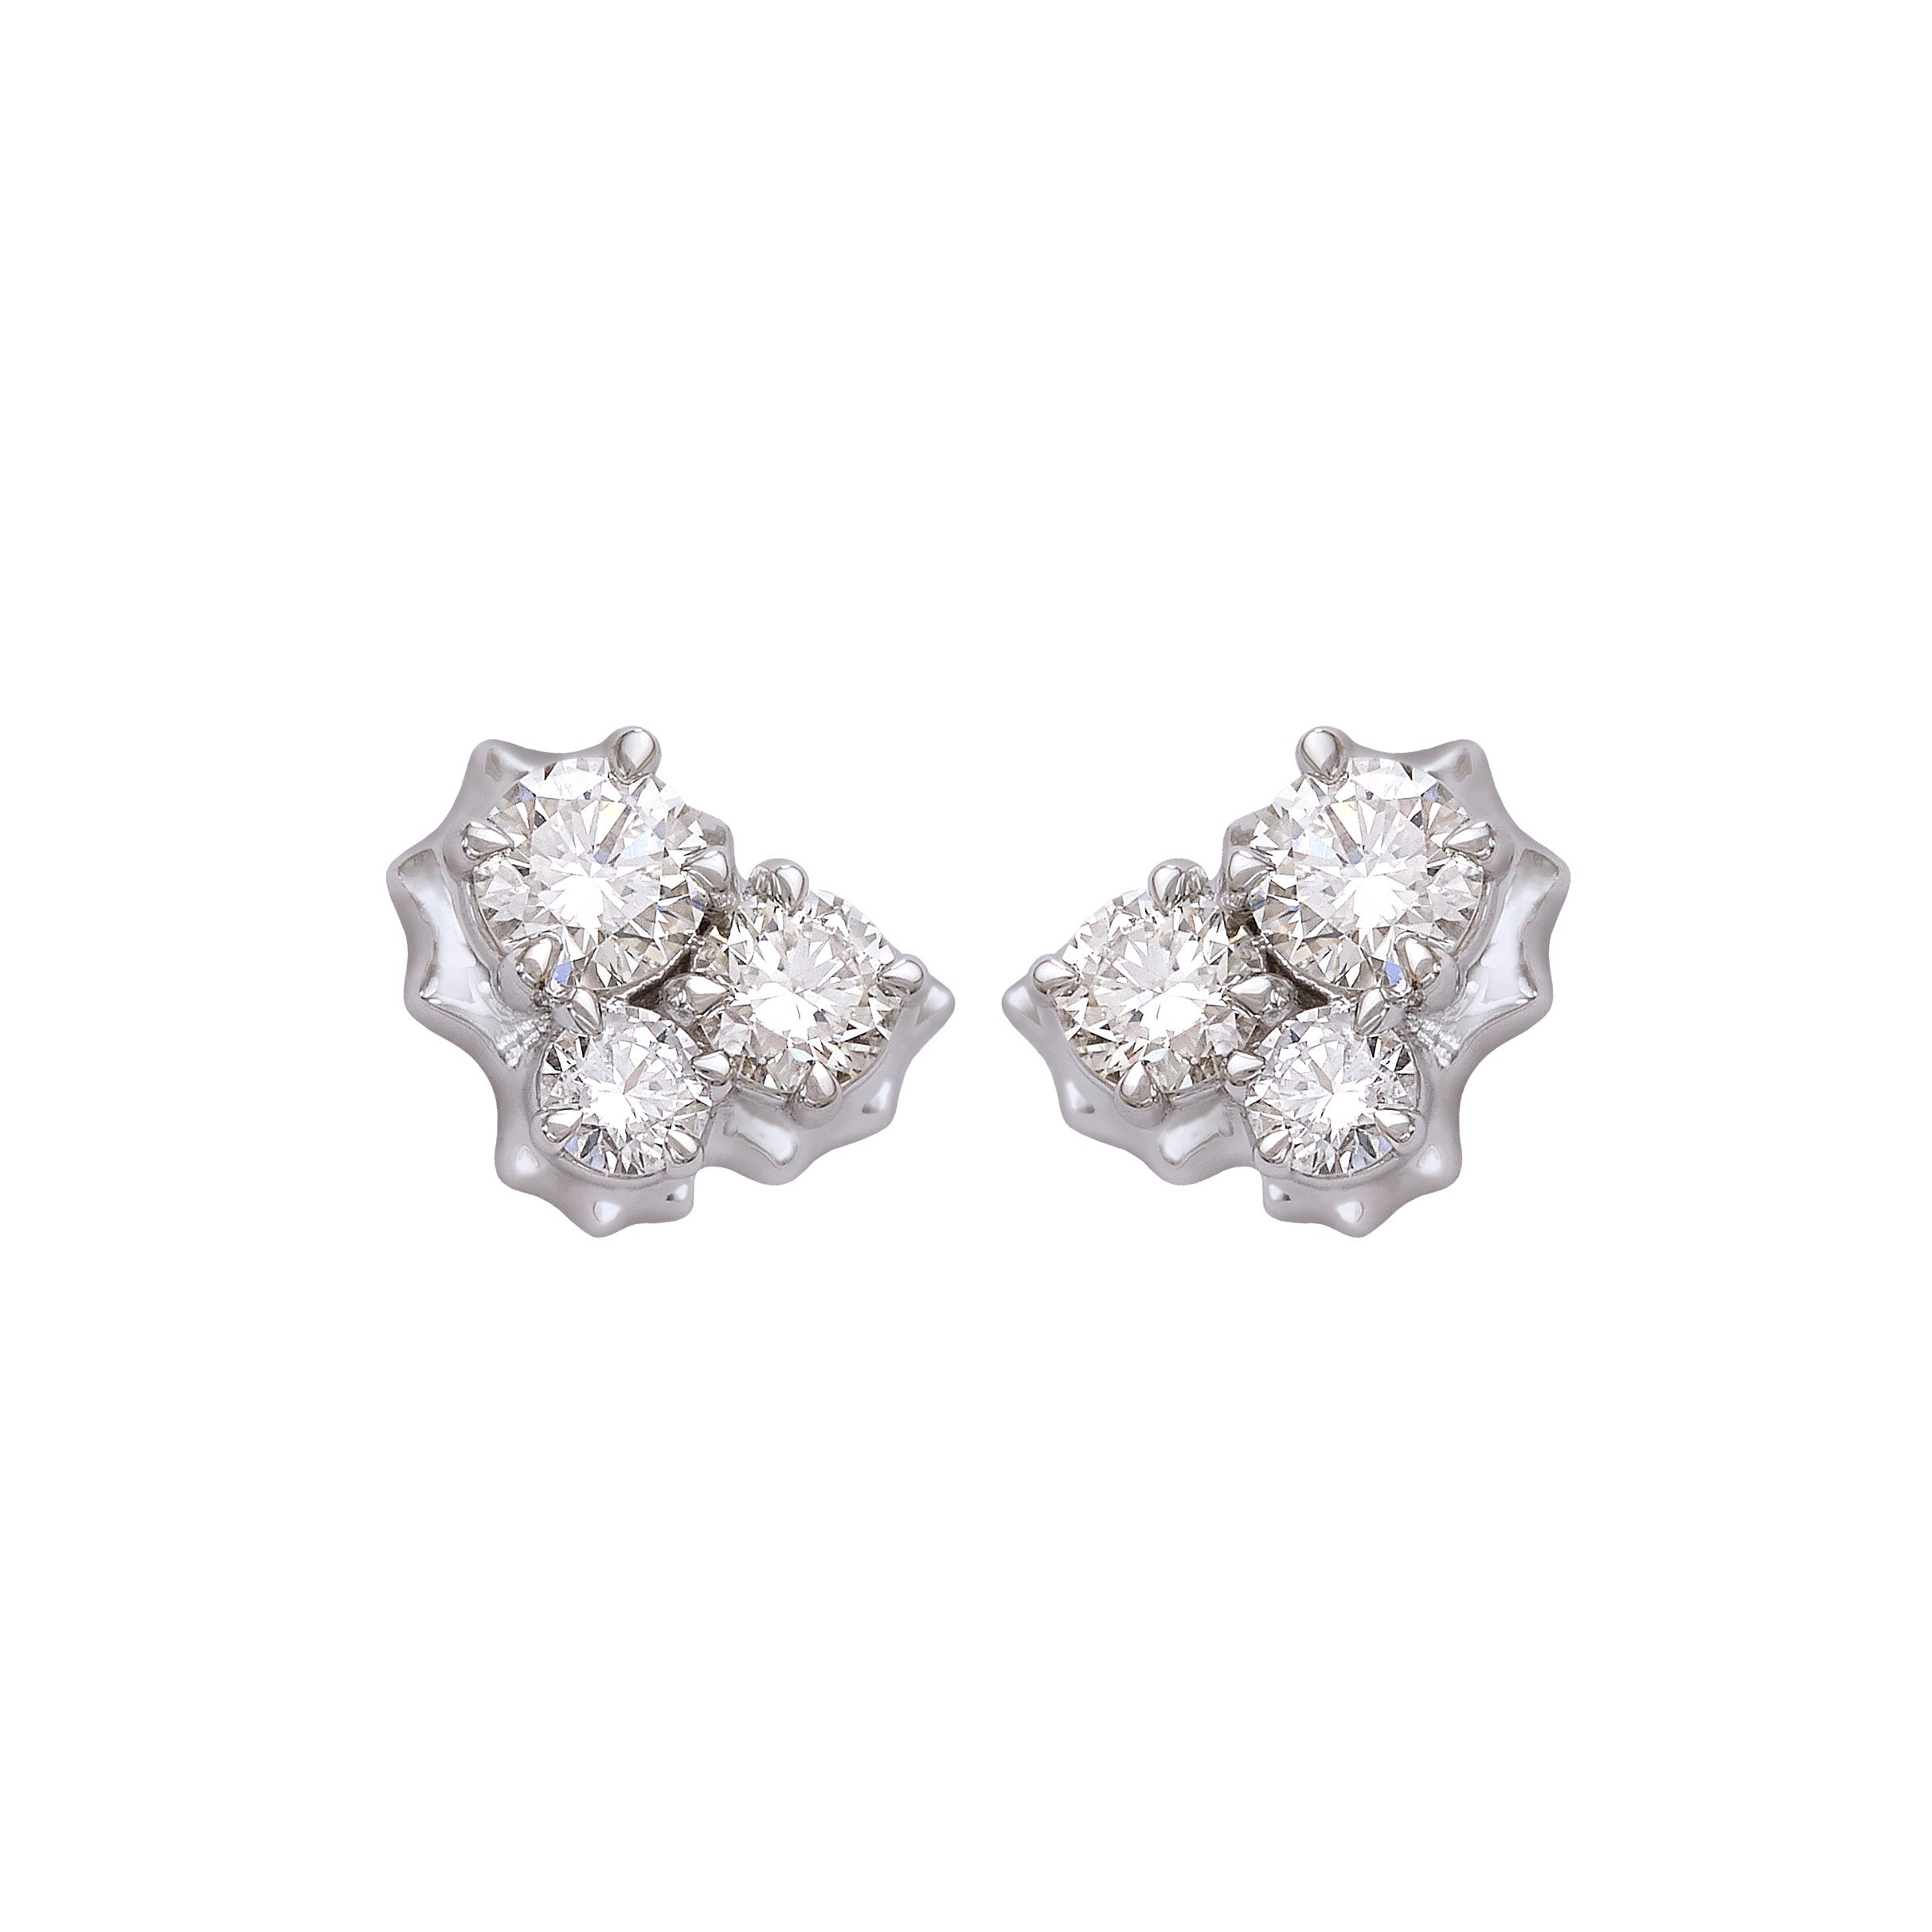 Clustered Diamond Earrrings - White Gold